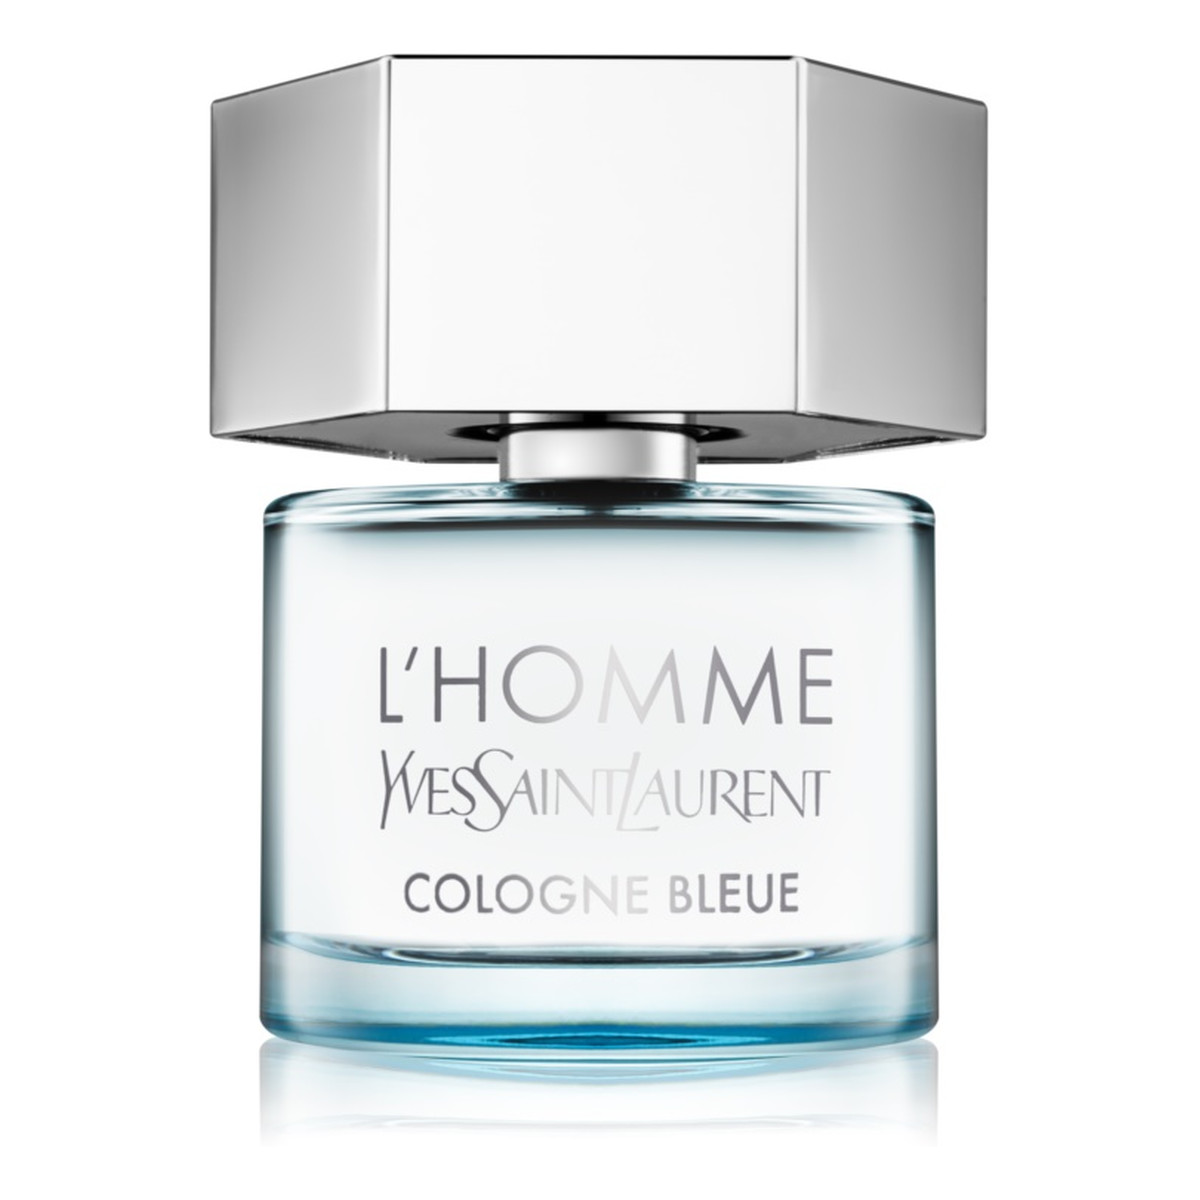 Yves Saint Laurent L'Homme Cologne Bleue woda toaletowa 60ml